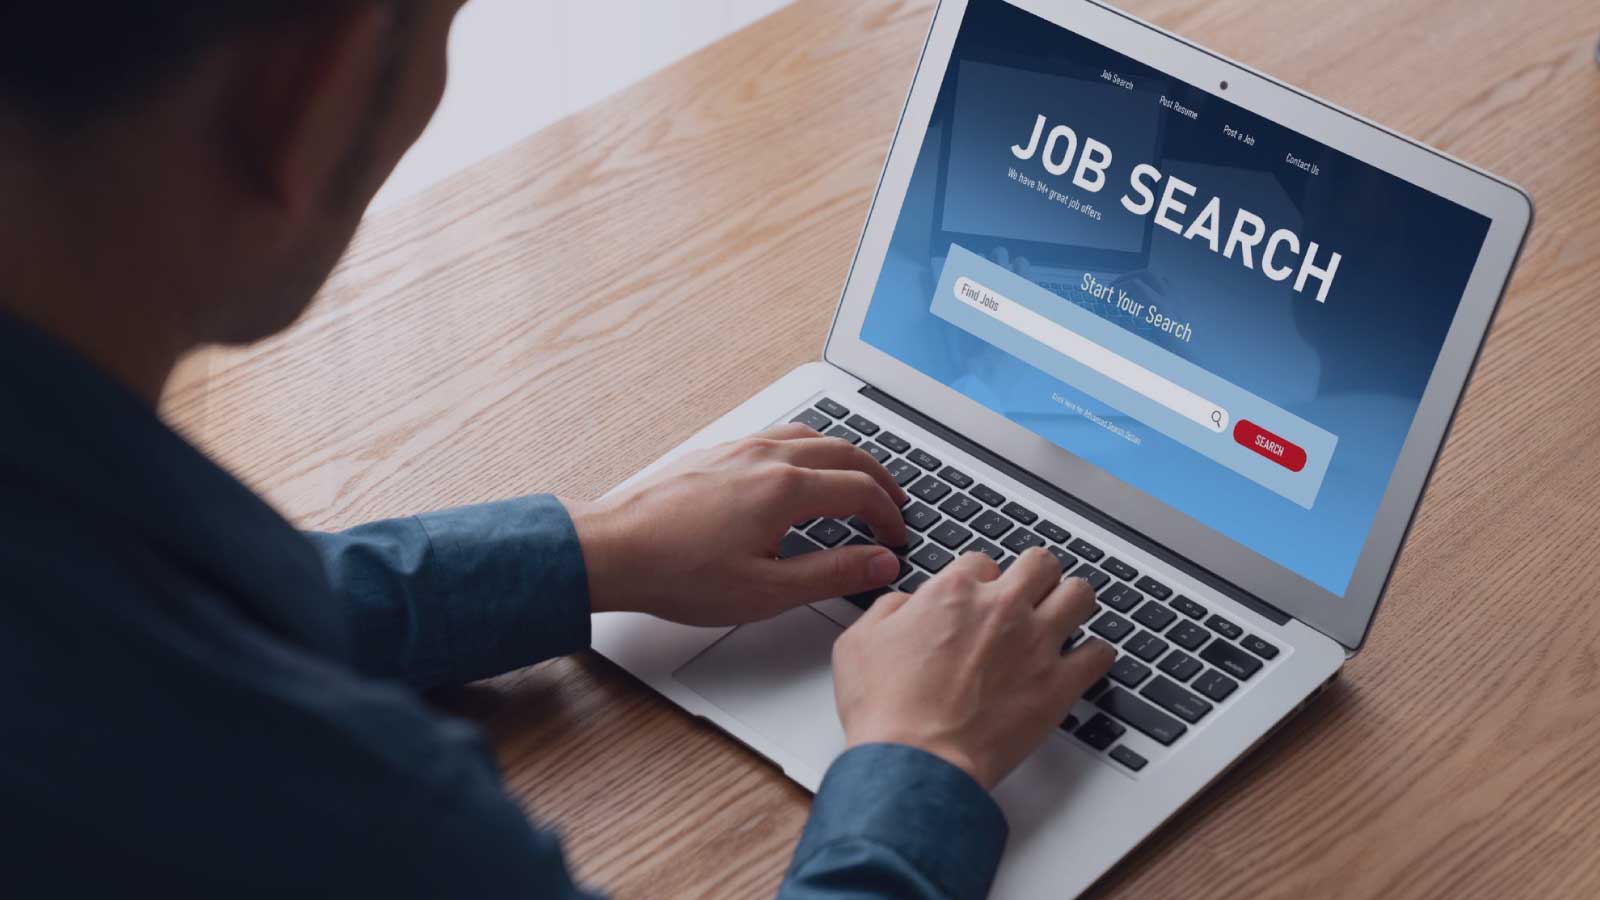 ویزای جستجوی کار یا Job Seeker Visa